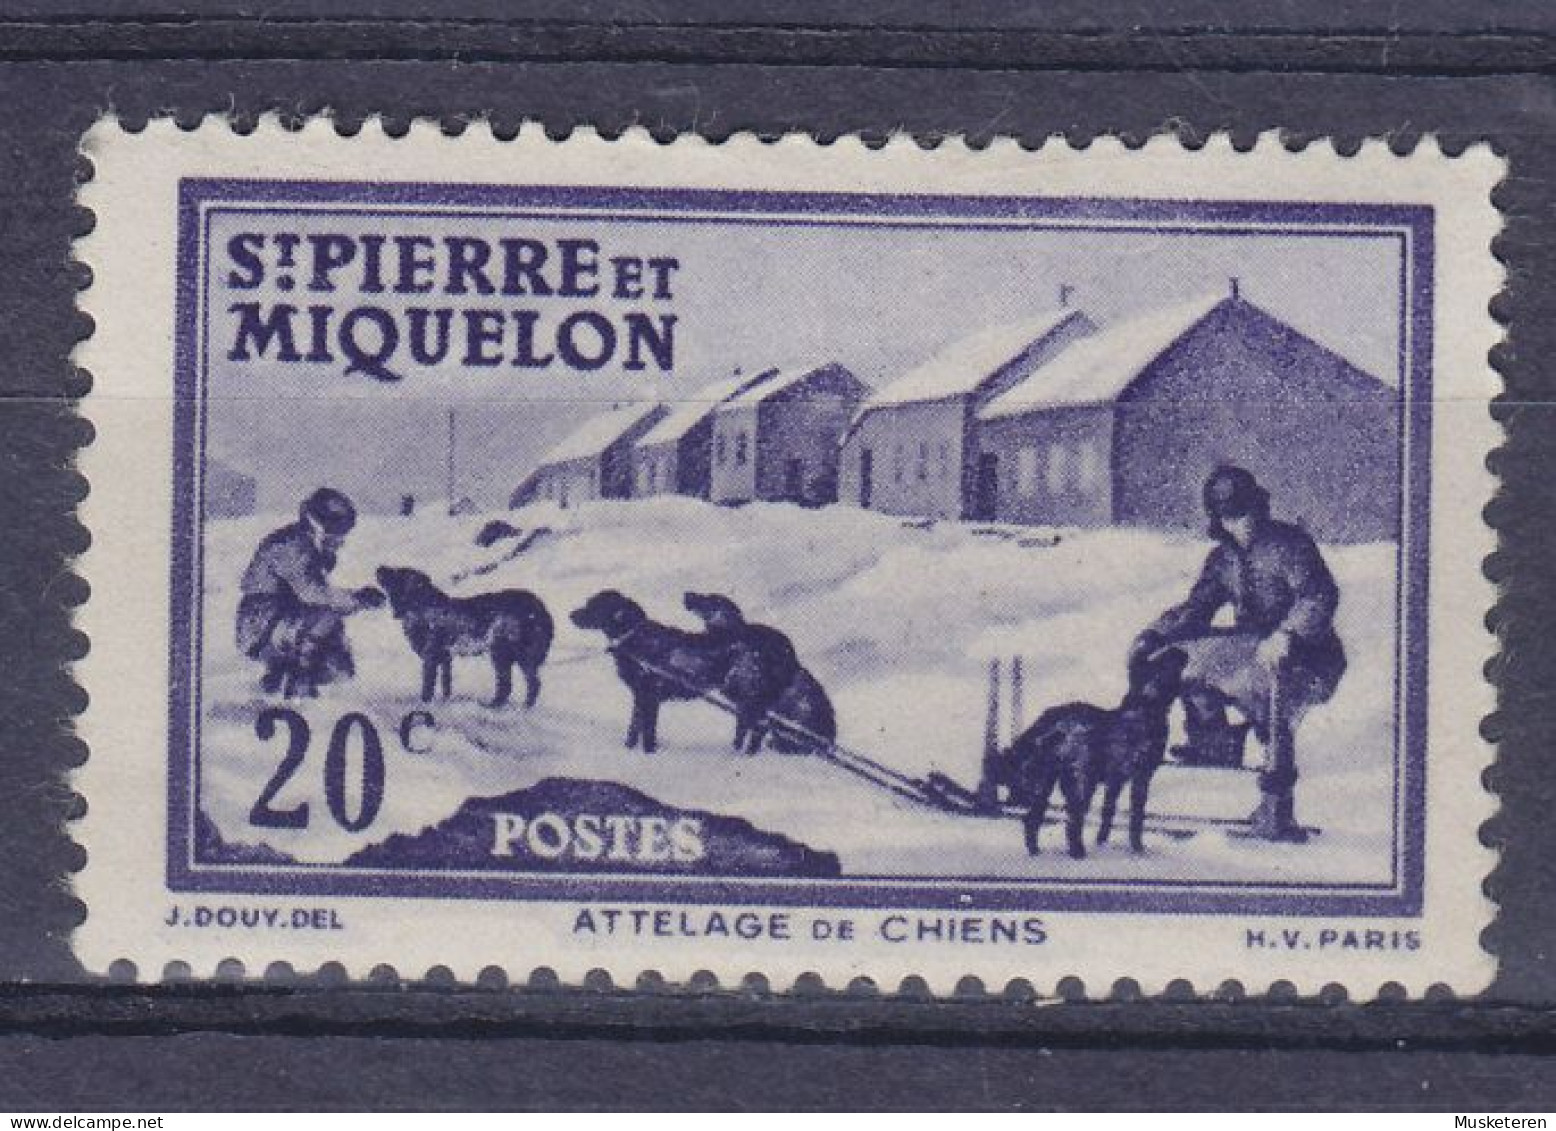 Saint-Pierre & Miquelon 1938 Mi. 176,  20c. Hundegespann Attelage Du Chiens, MH* - Neufs